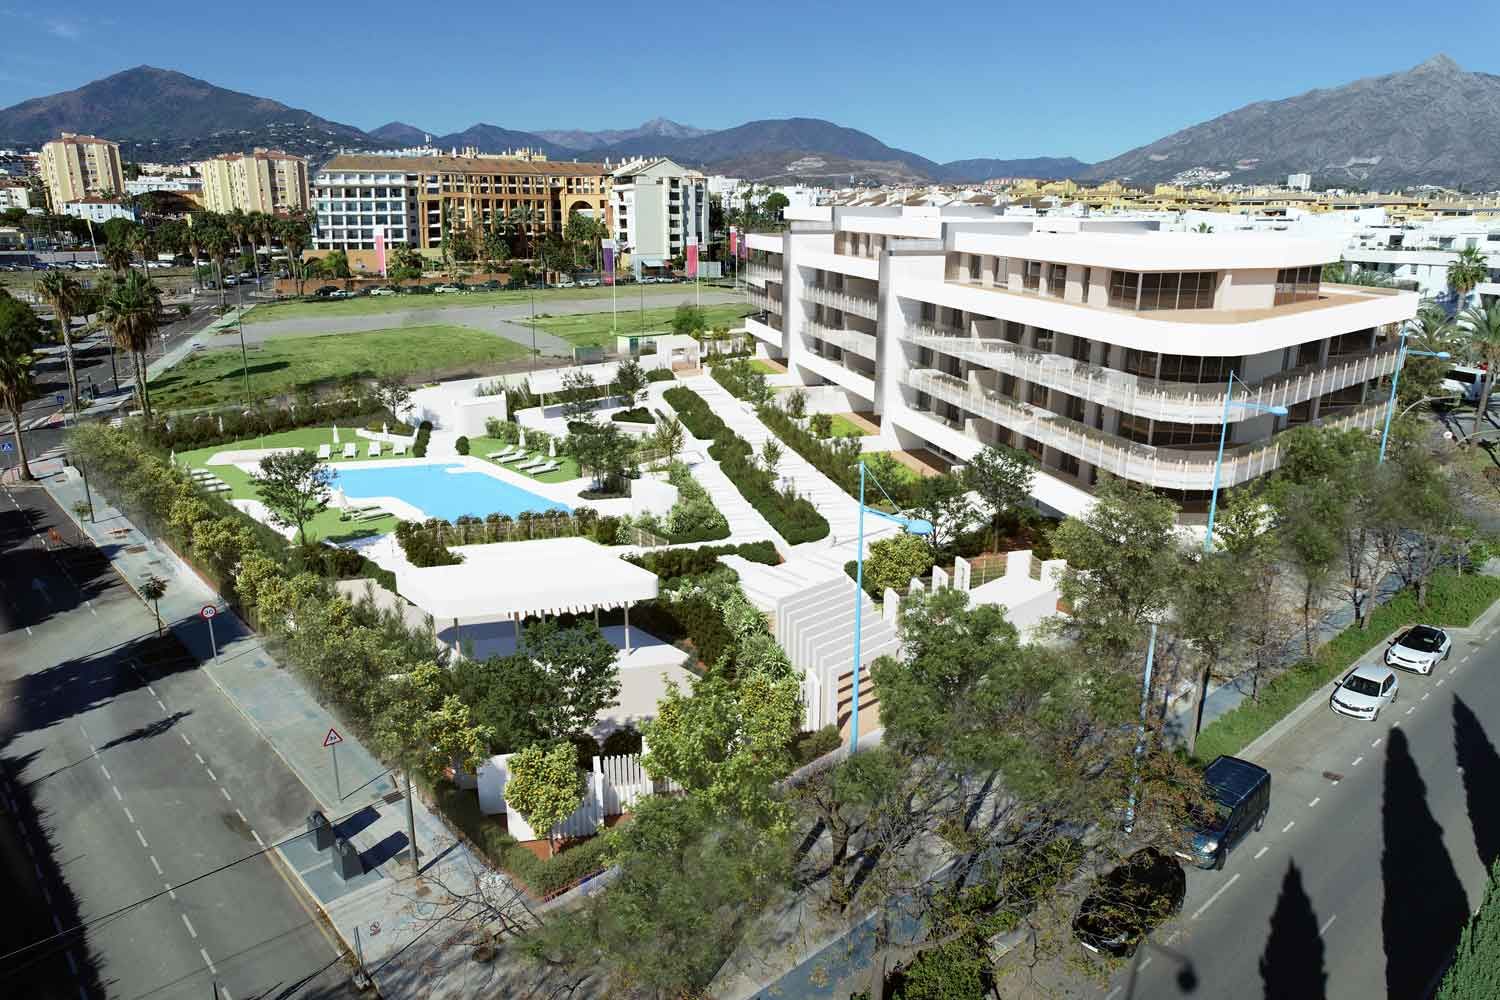 Oportunidad de inversión excepcional: Exquisito refugio residencial junto a la playa | Engel & Völkers Marbella